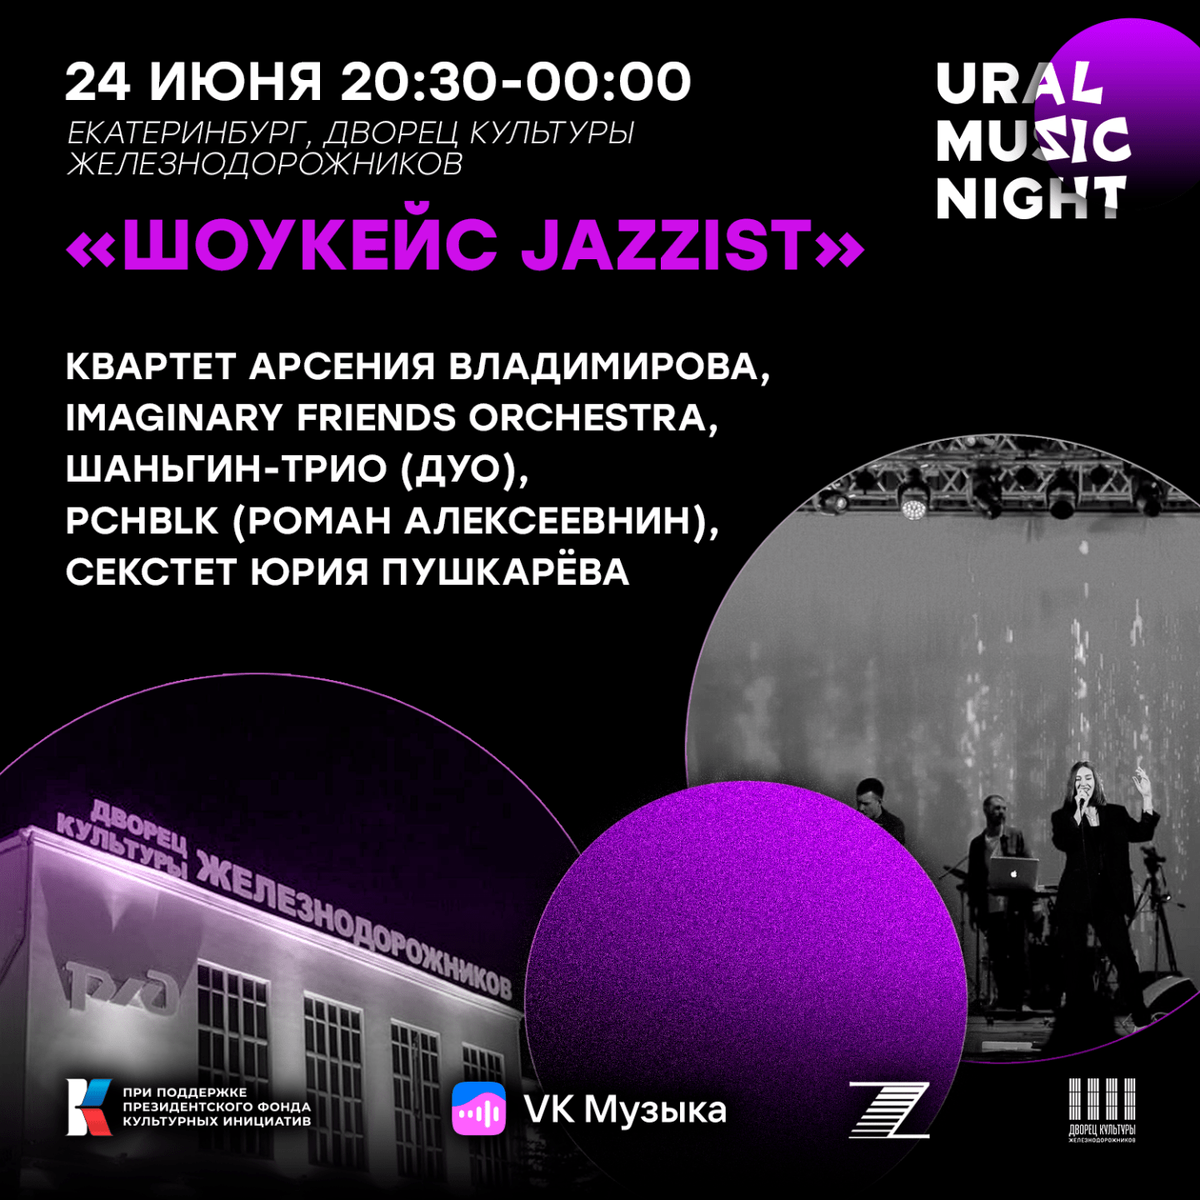 Урал Мьюзик Найт. Ural Music Night 2022 Екатеринбург. Ural Music Night 2022 Екатеринбург афиша. Ночь музыки афиша.